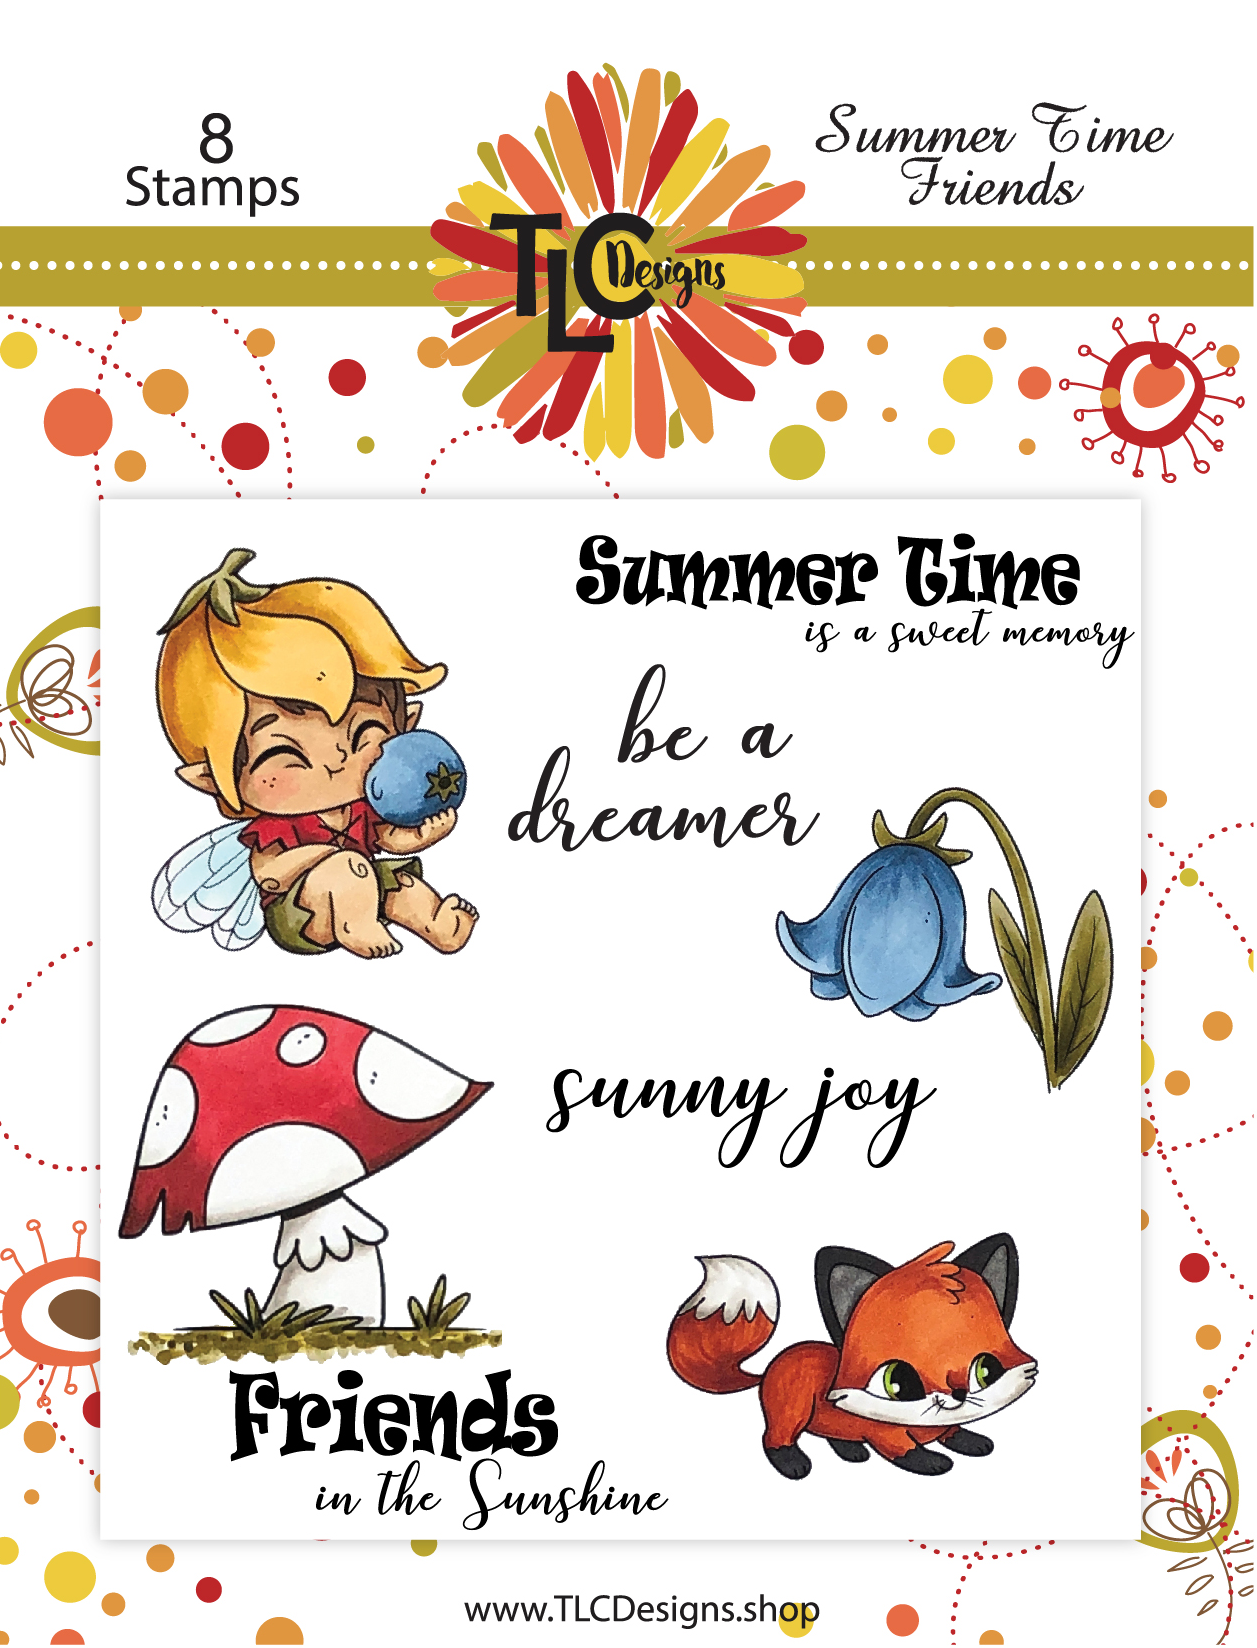 TLC Designs Summer Time Friends stamp set